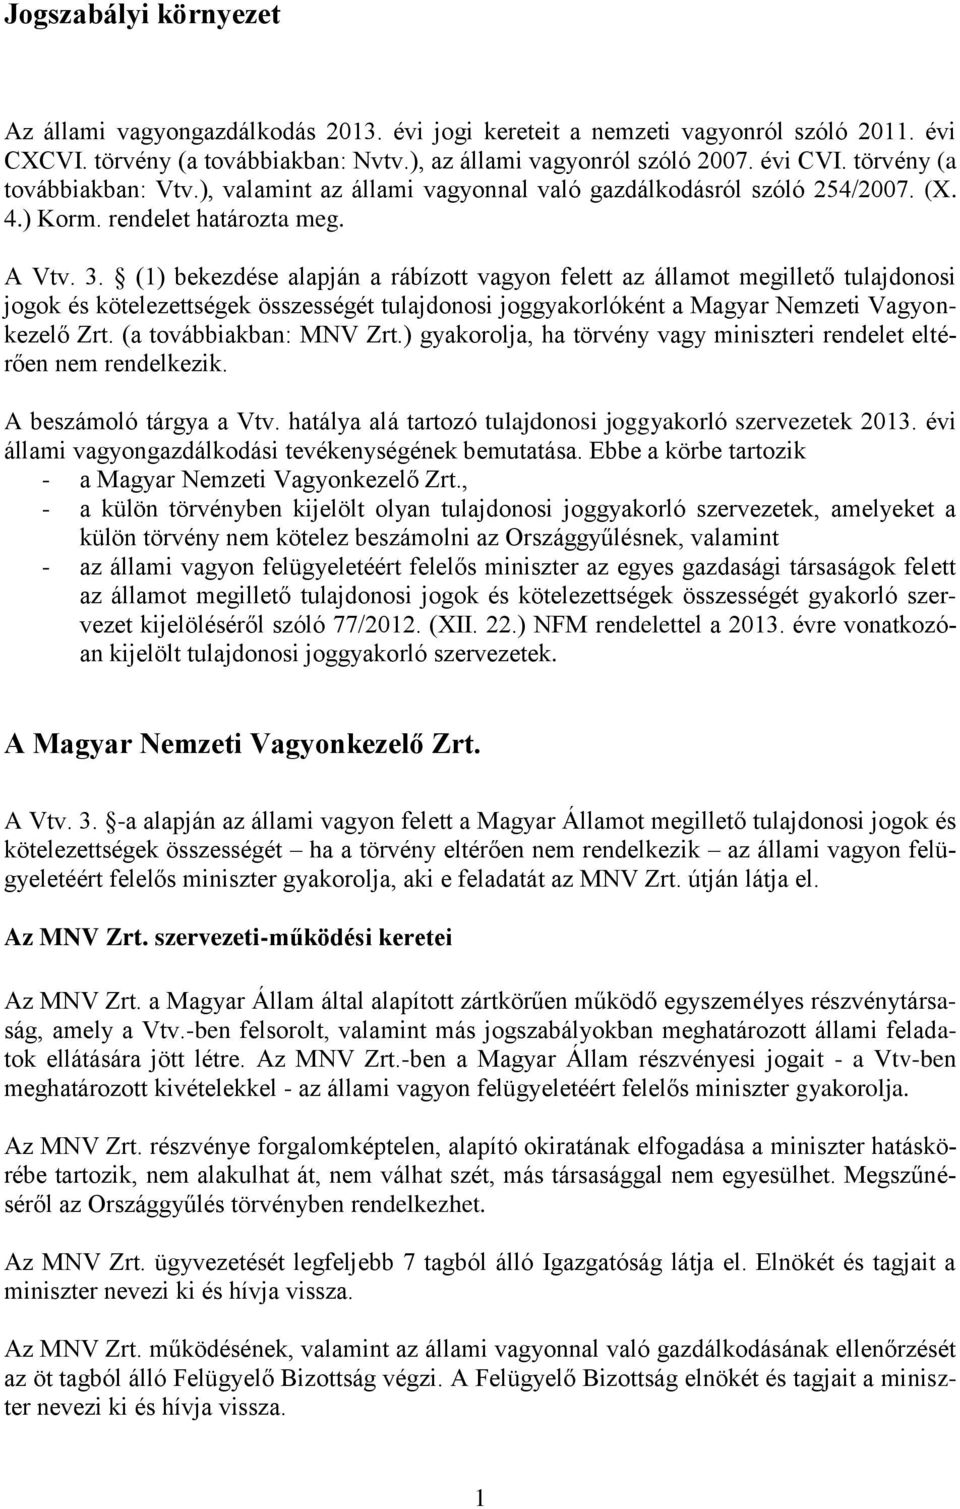 (1) bekezdése alapján a rábízott vagyon felett az államot megillető tulajdonosi jogok és kötelezettségek összességét tulajdonosi joggyakorlóként a Magyar Nemzeti Vagyonkezelő Zrt.